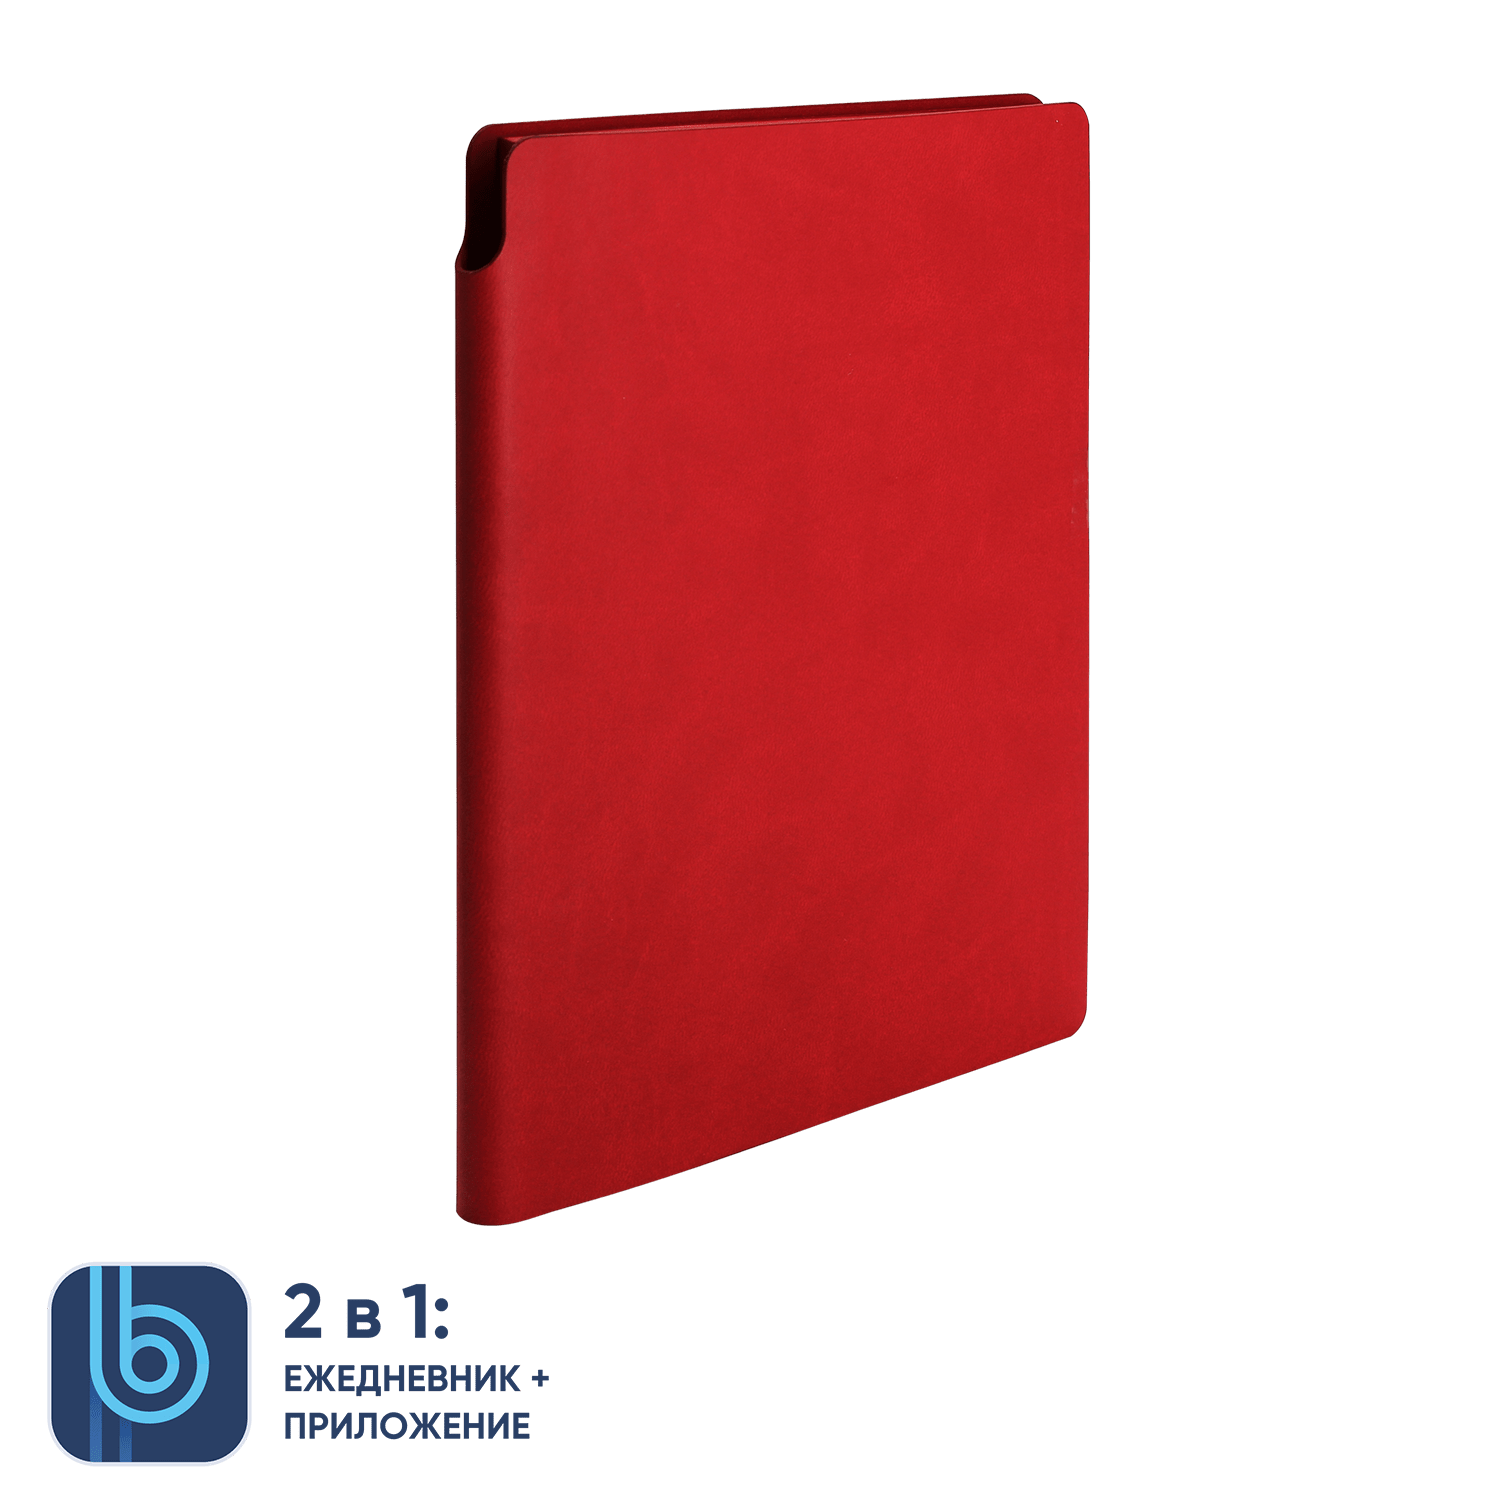 Ежедневник Bplanner.04 red (красный), красный, кожзам